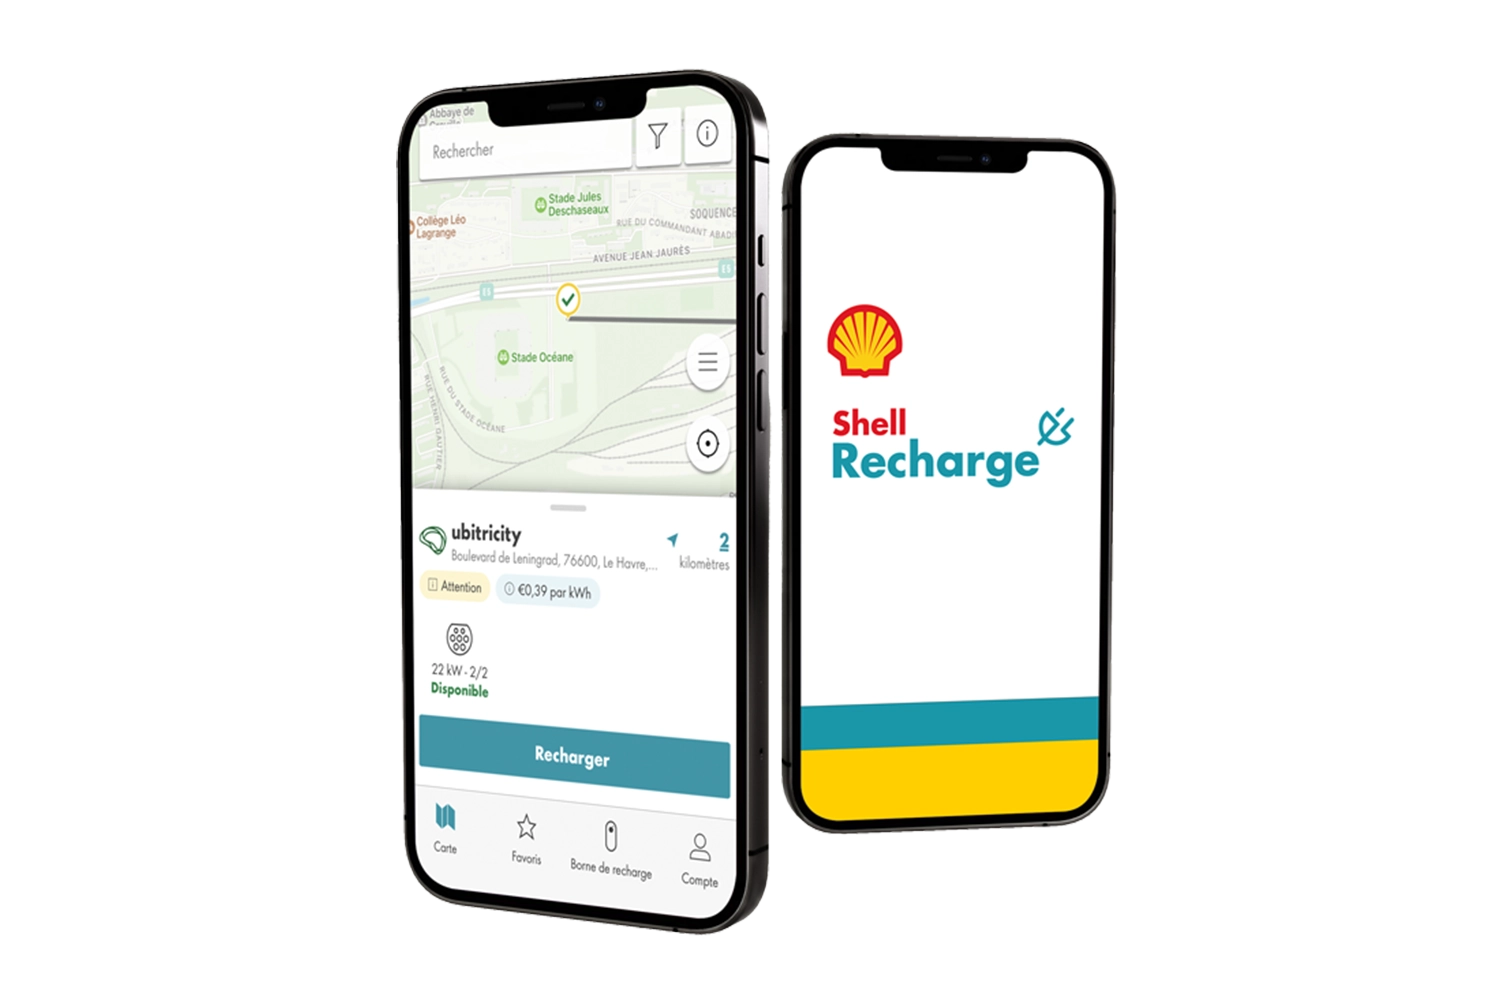 Extrait de la carte de recharge Shell sur un smartphone, qui permet aux conducteurs de trouver des stations de recharge publiques à proximité.